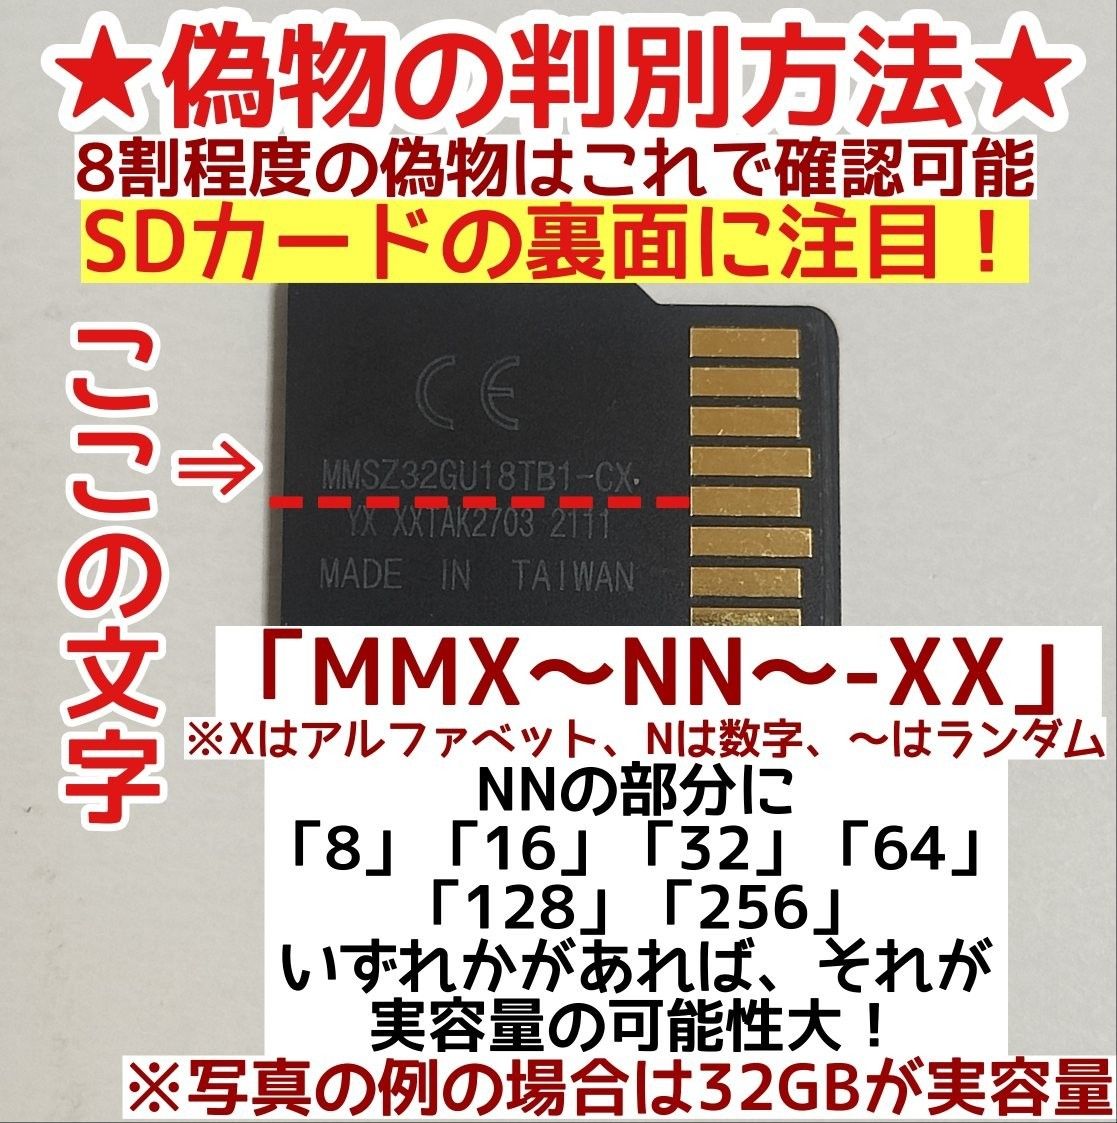 microsd マイクロSD カード 64GB 1枚★特価品・相性保証★